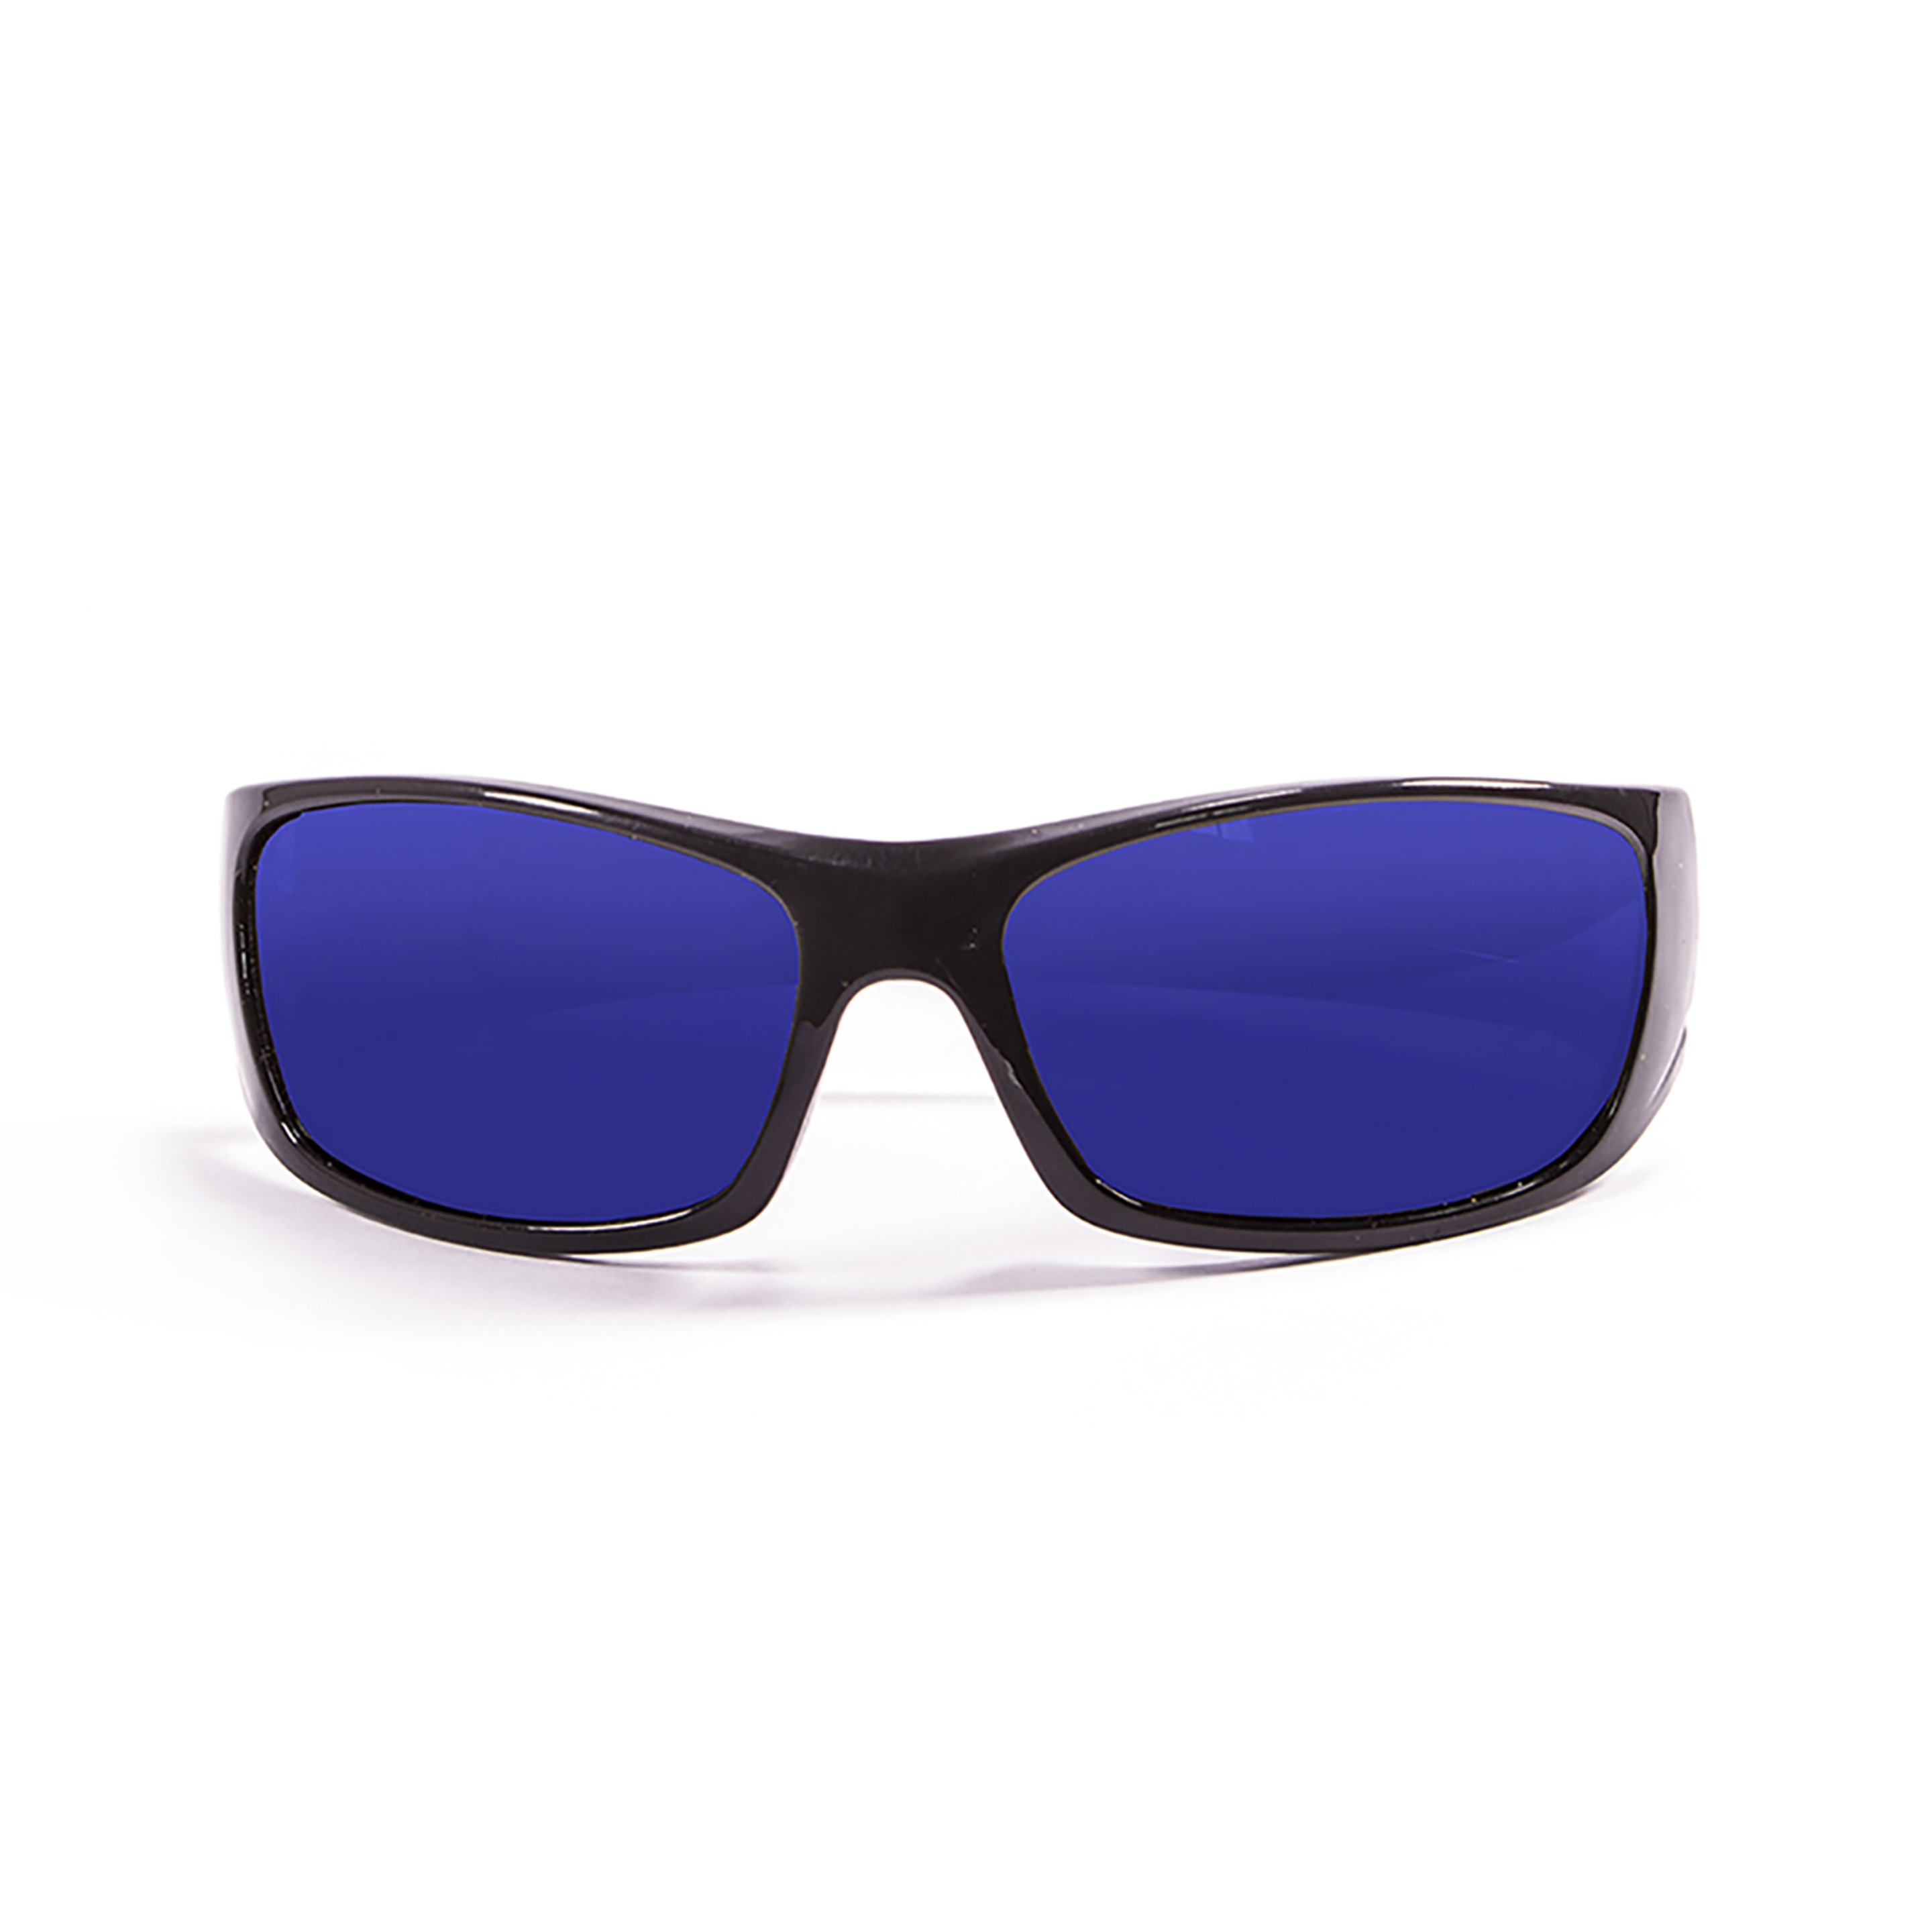 Gafas De Sol Técnicas Para La Práctica De Deportes De Agua  Bermuda Ocean Sunglasses - Negro  MKP